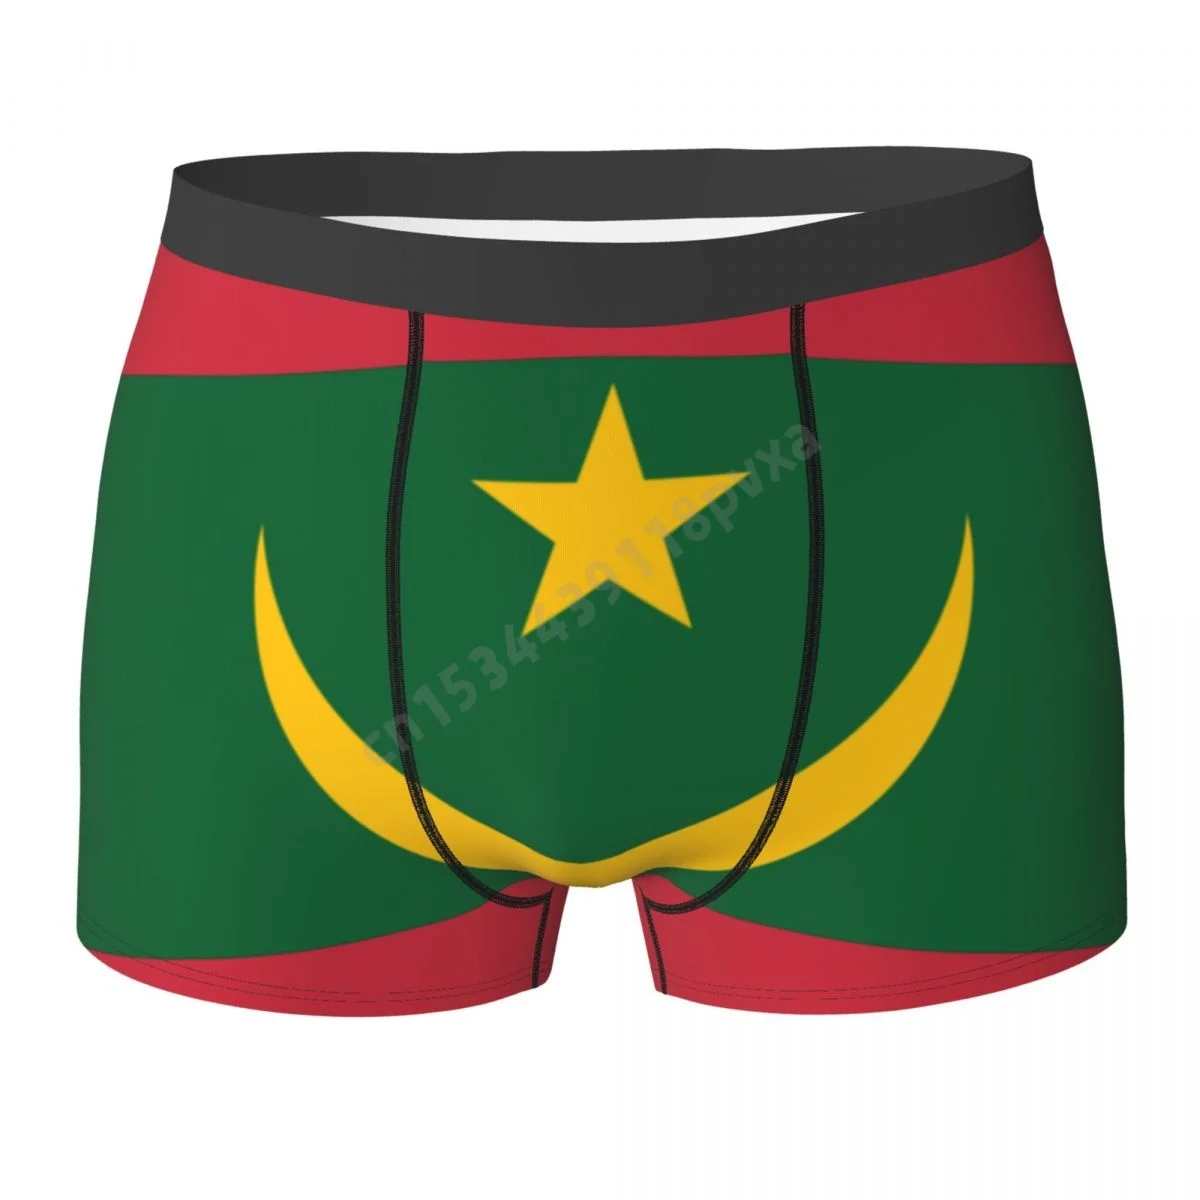 

Трусы-боксеры для мальчиков с флагом Мавритании, мужские трусы из полиэстера, большие размеры